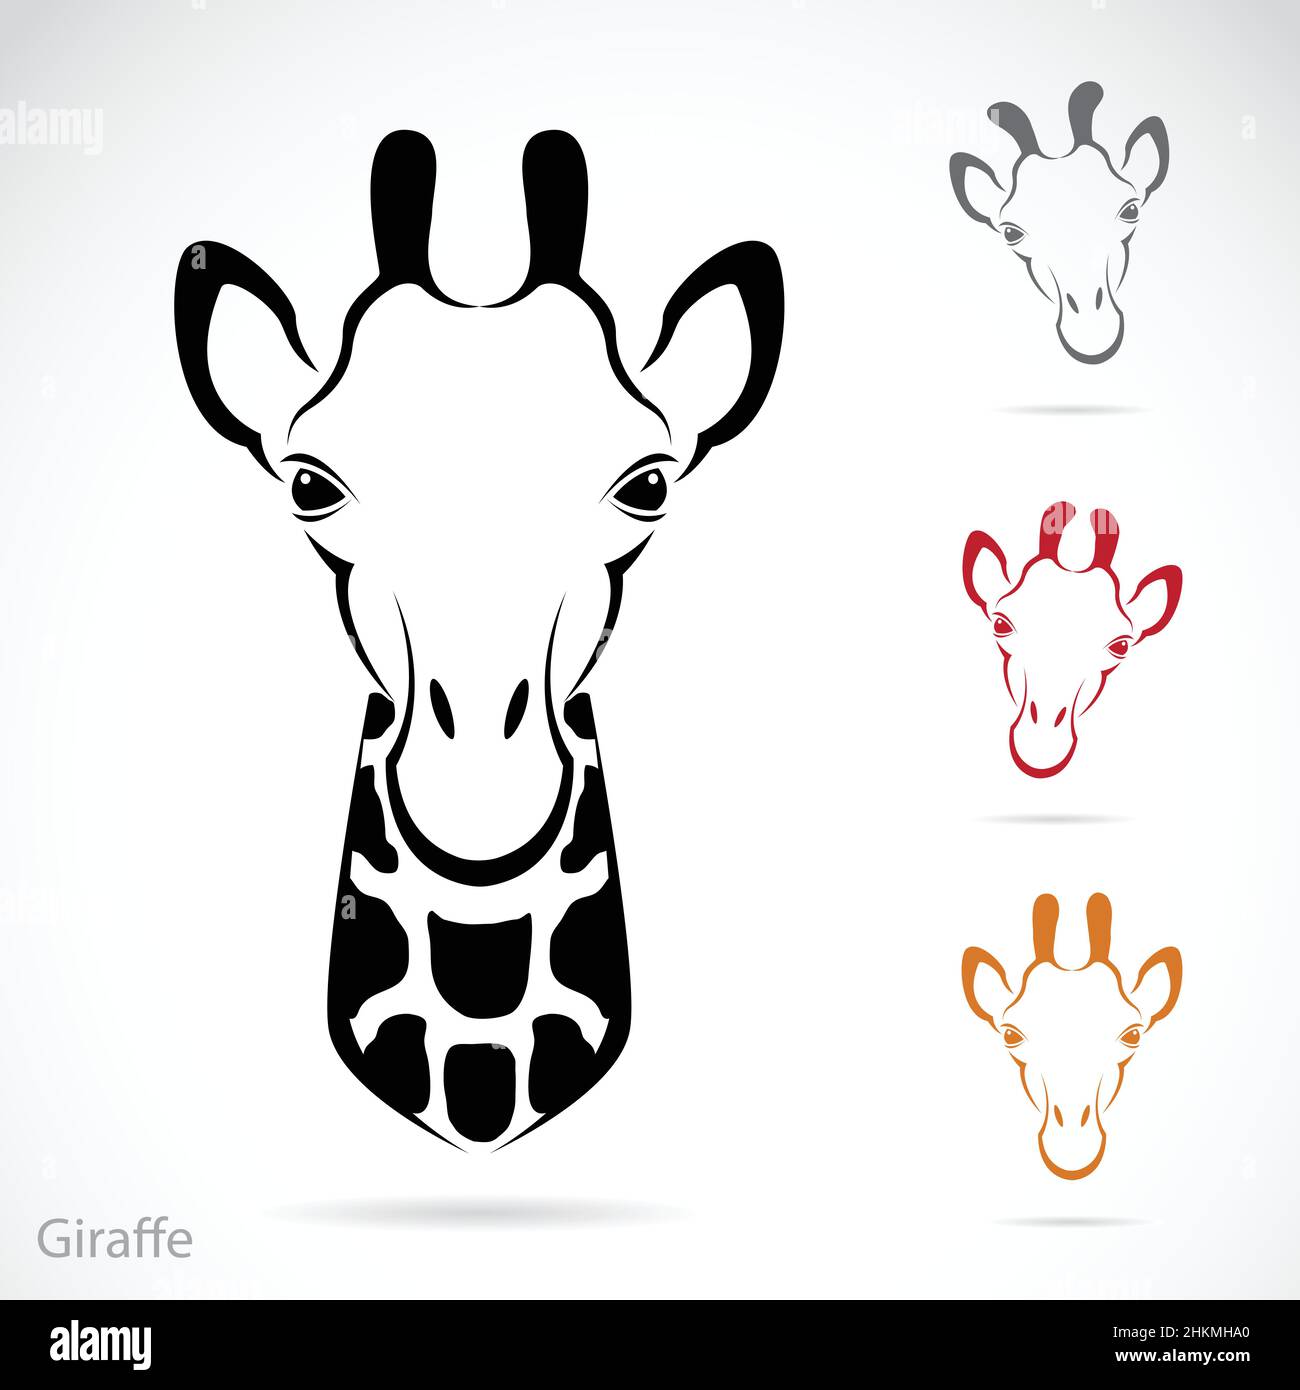 Vektorbild des Giraffenkopfes auf weißem Hintergrund. Leicht editierbare Vektorgrafik mit Ebenen. Stock Vektor